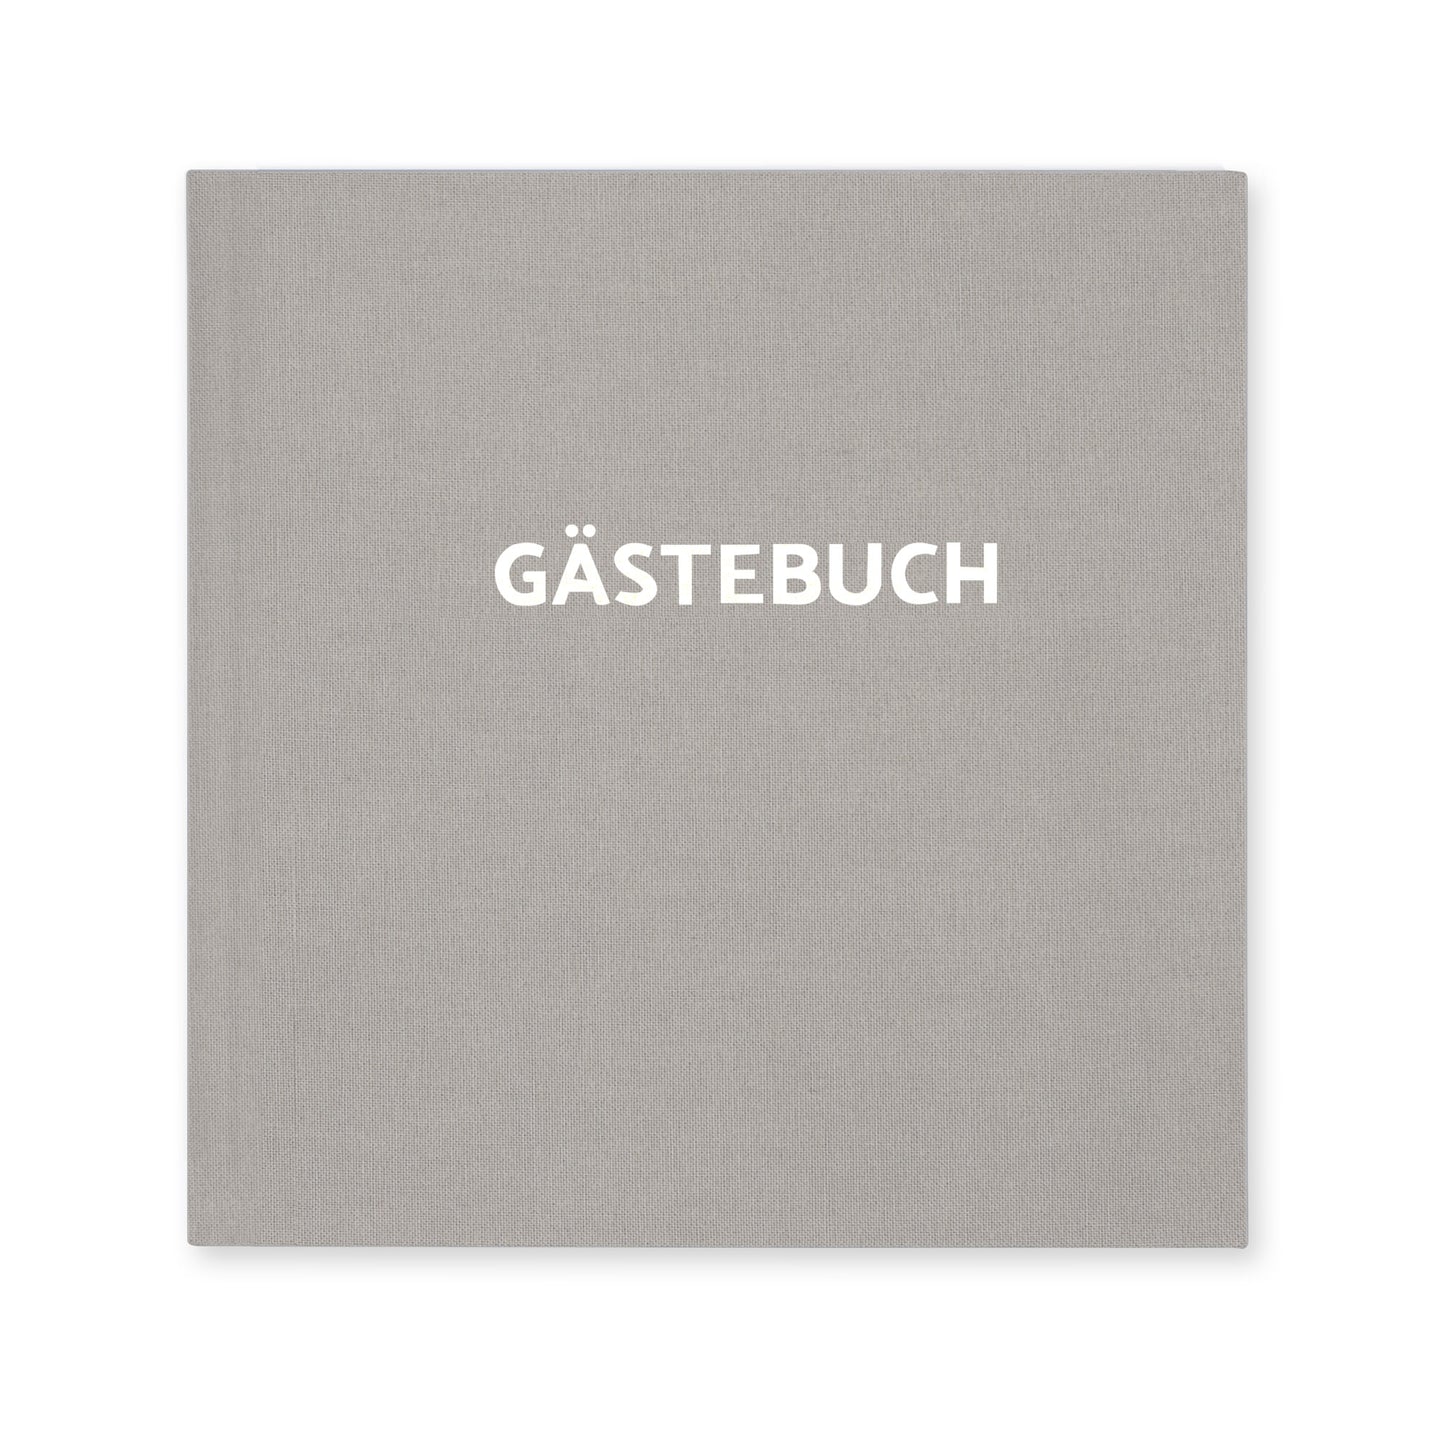 Gästebuch - Deluxe Lightgrey-Silver (square)